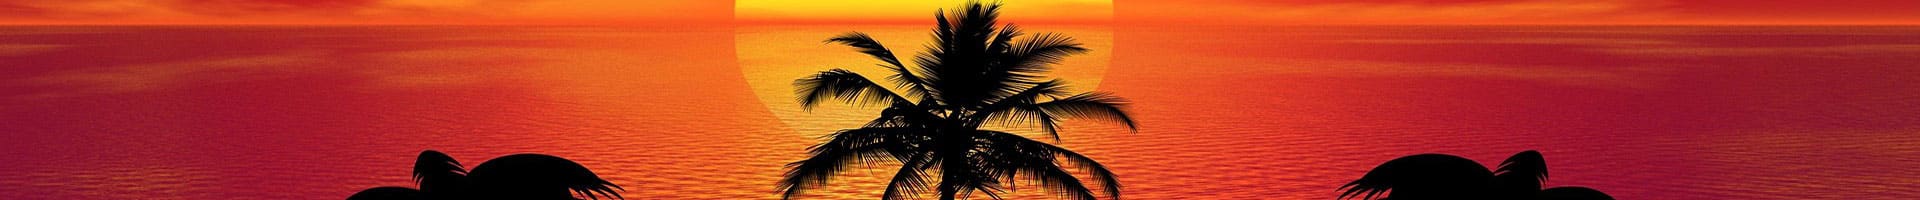 Header Bild Palmenblätter bei Sonnenuntergang